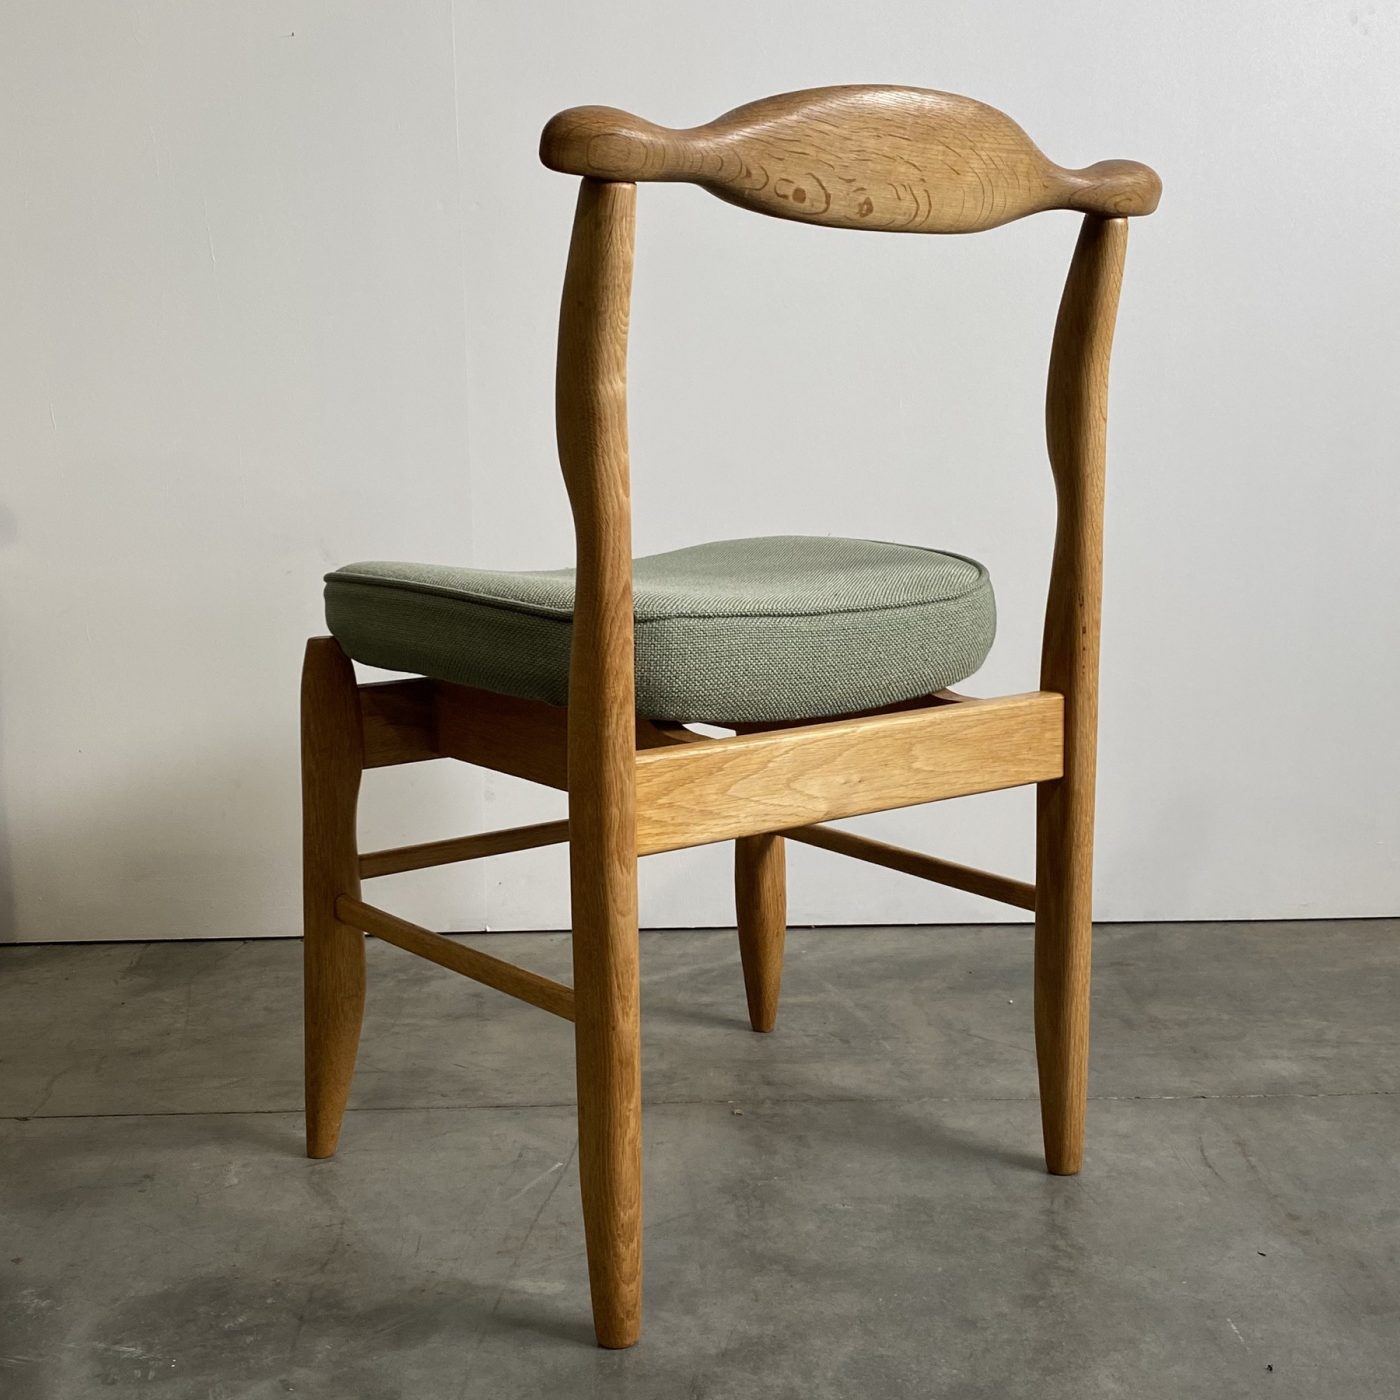 objet-vagabond-guillerme-chairs0004